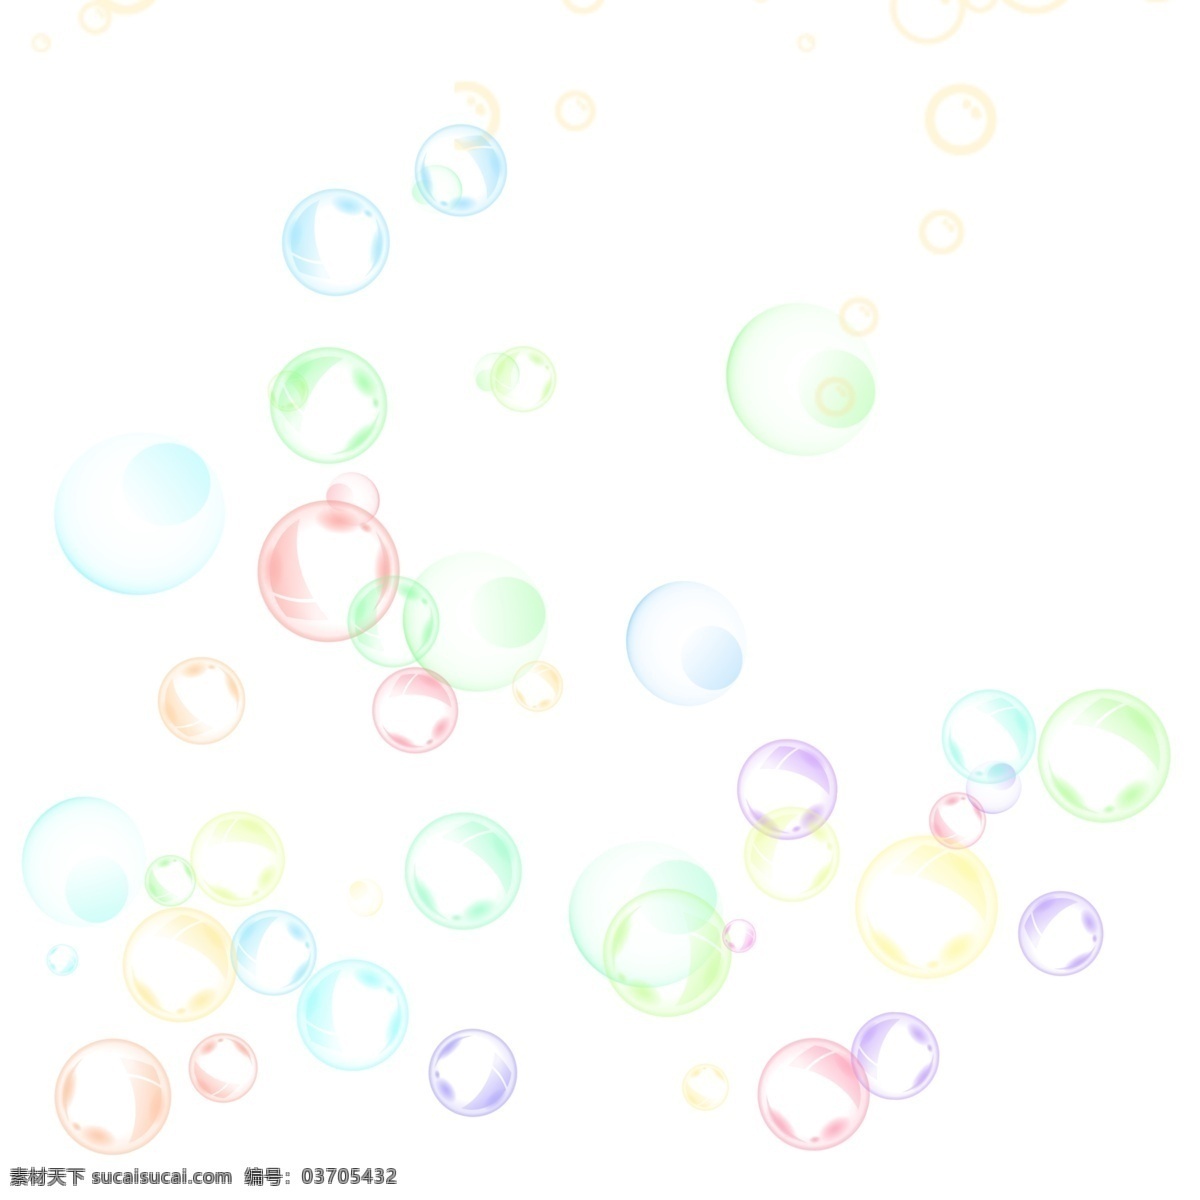 七彩 泡泡 多样式 分 图 层 商用 飞舞 圆形 半透明 分图层 可商用 散布